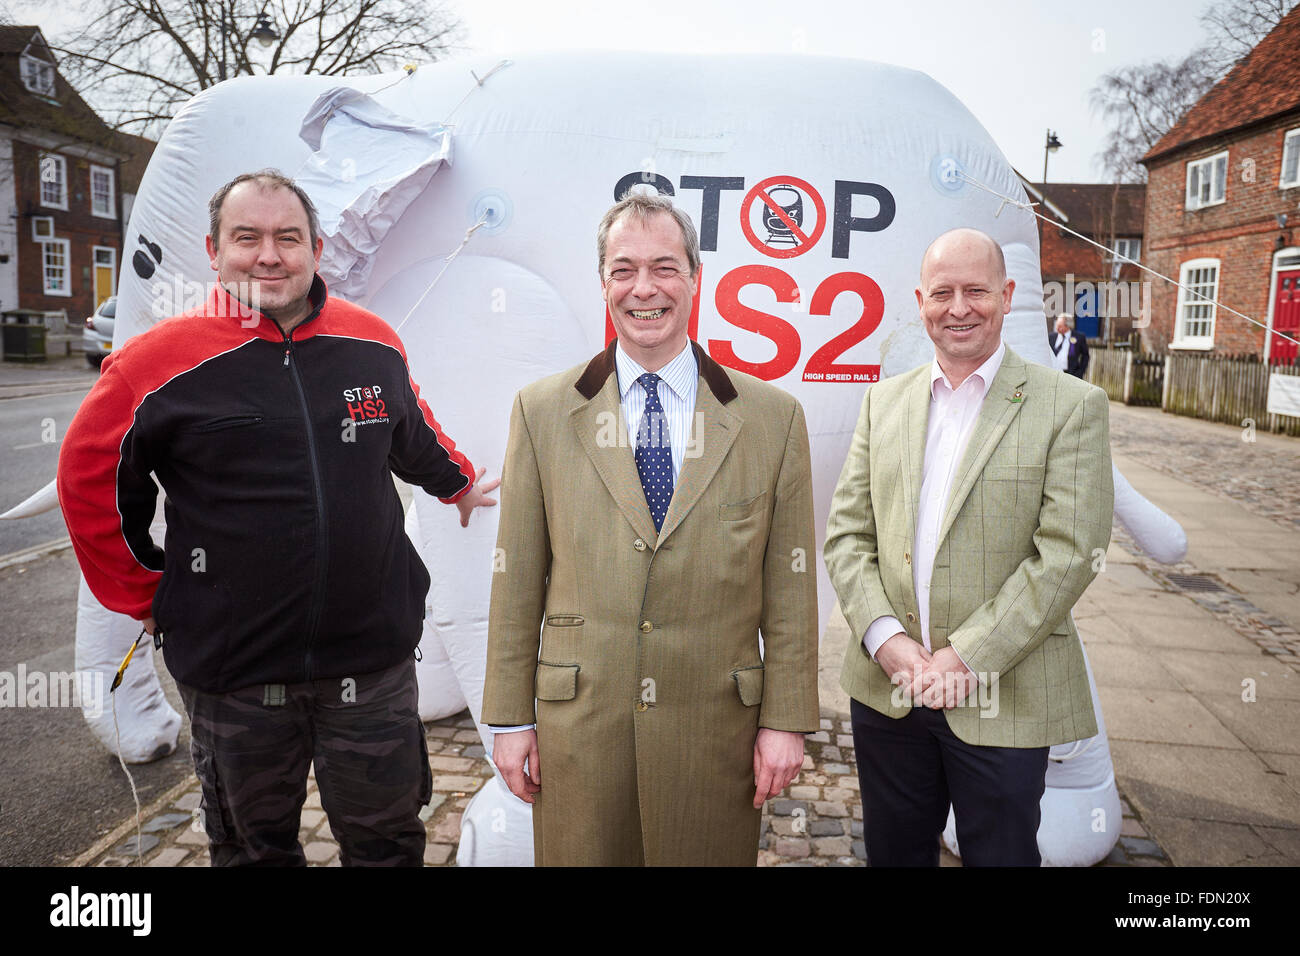 El líder del partido UKIP Nigel Farage posa delante del tope HS2 elefante blanco inflable con Chris Adams (R) y Joe Rukin (L) Foto de stock